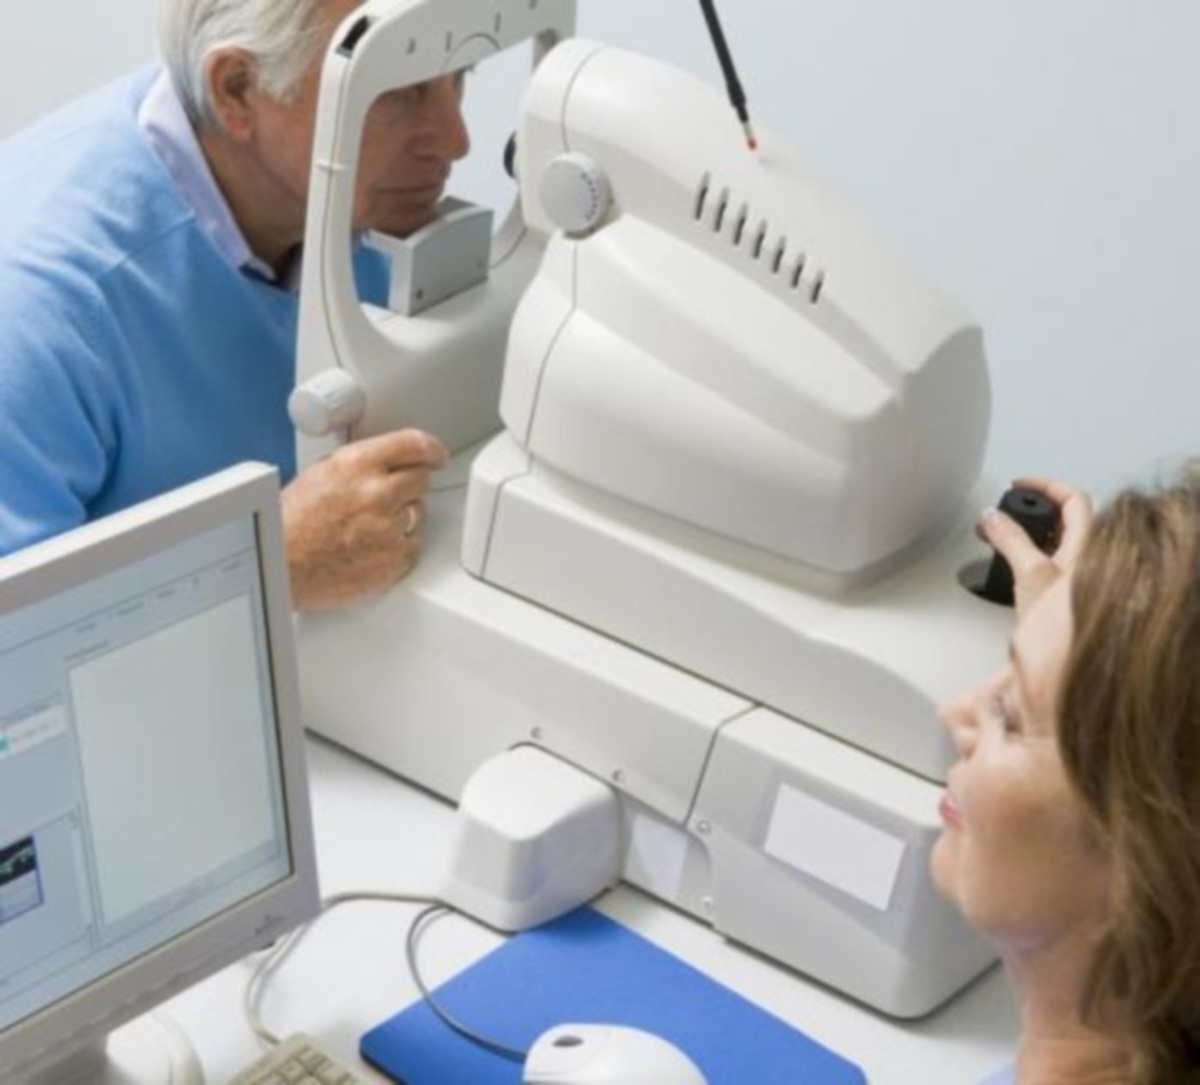 Πασίγνωστο οφθαλμιατρείο λειτουργεί σαν κλινική δίχως να έχει άδεια – Έγγραφα ντοκουμέντα